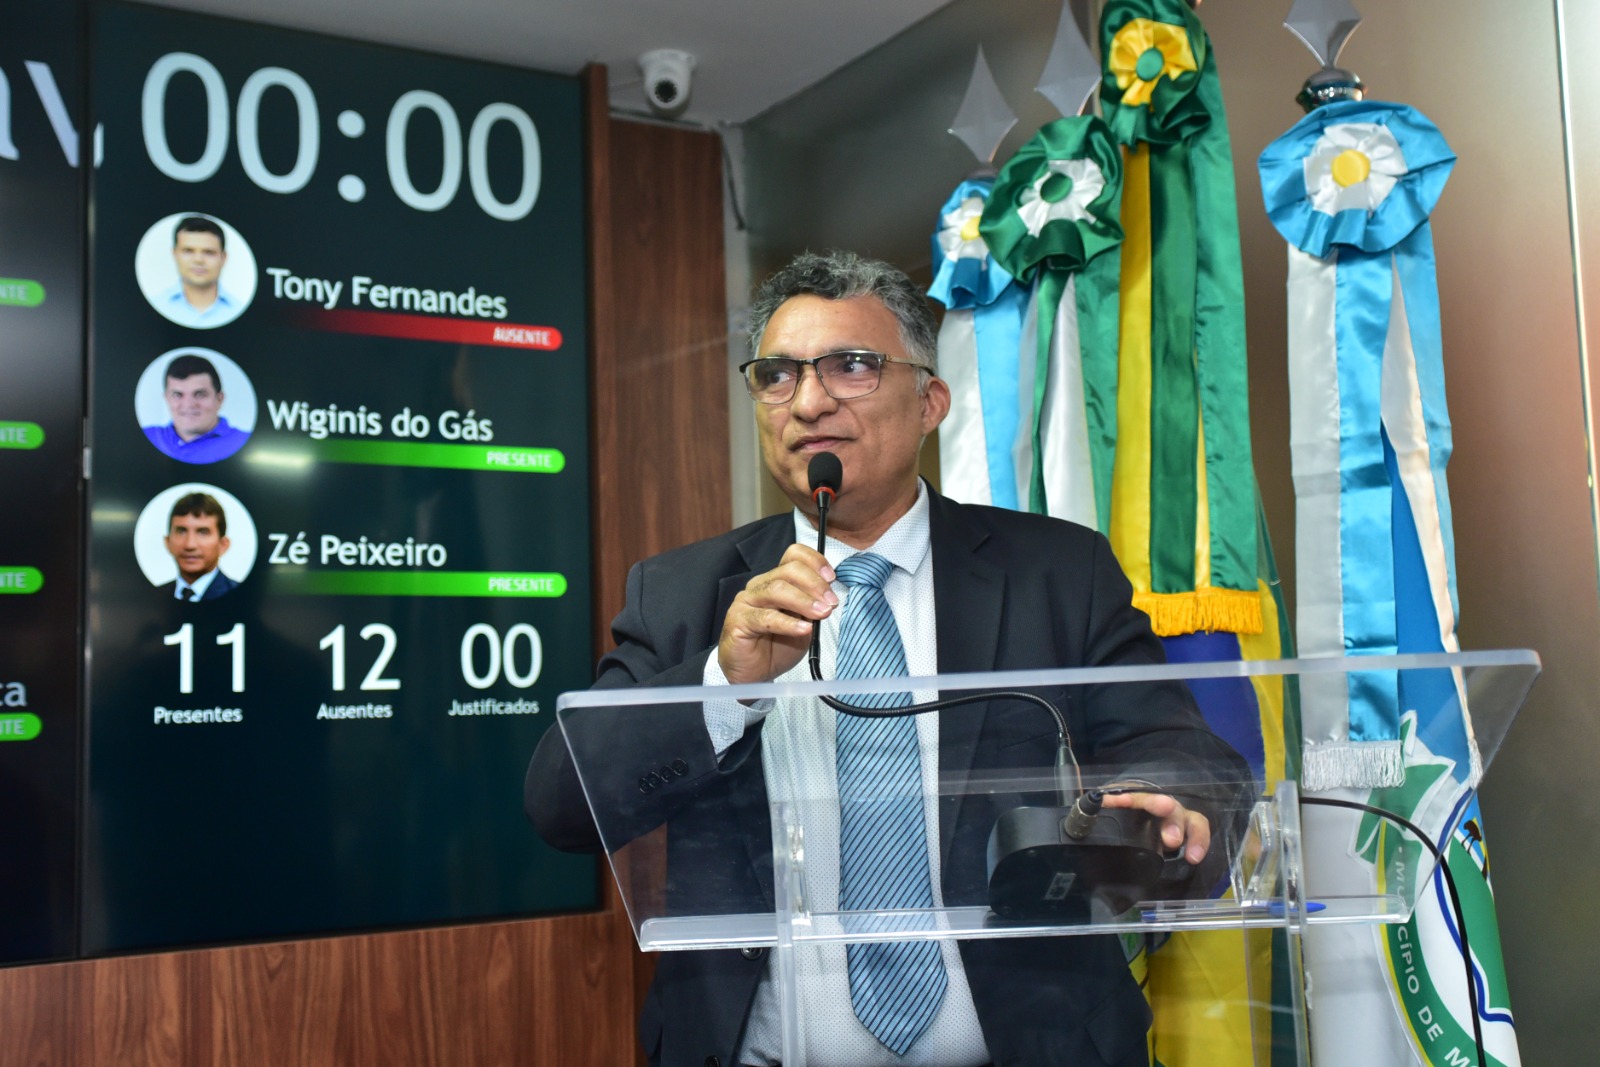 Francisco Carlos reforça convite para audiência pública